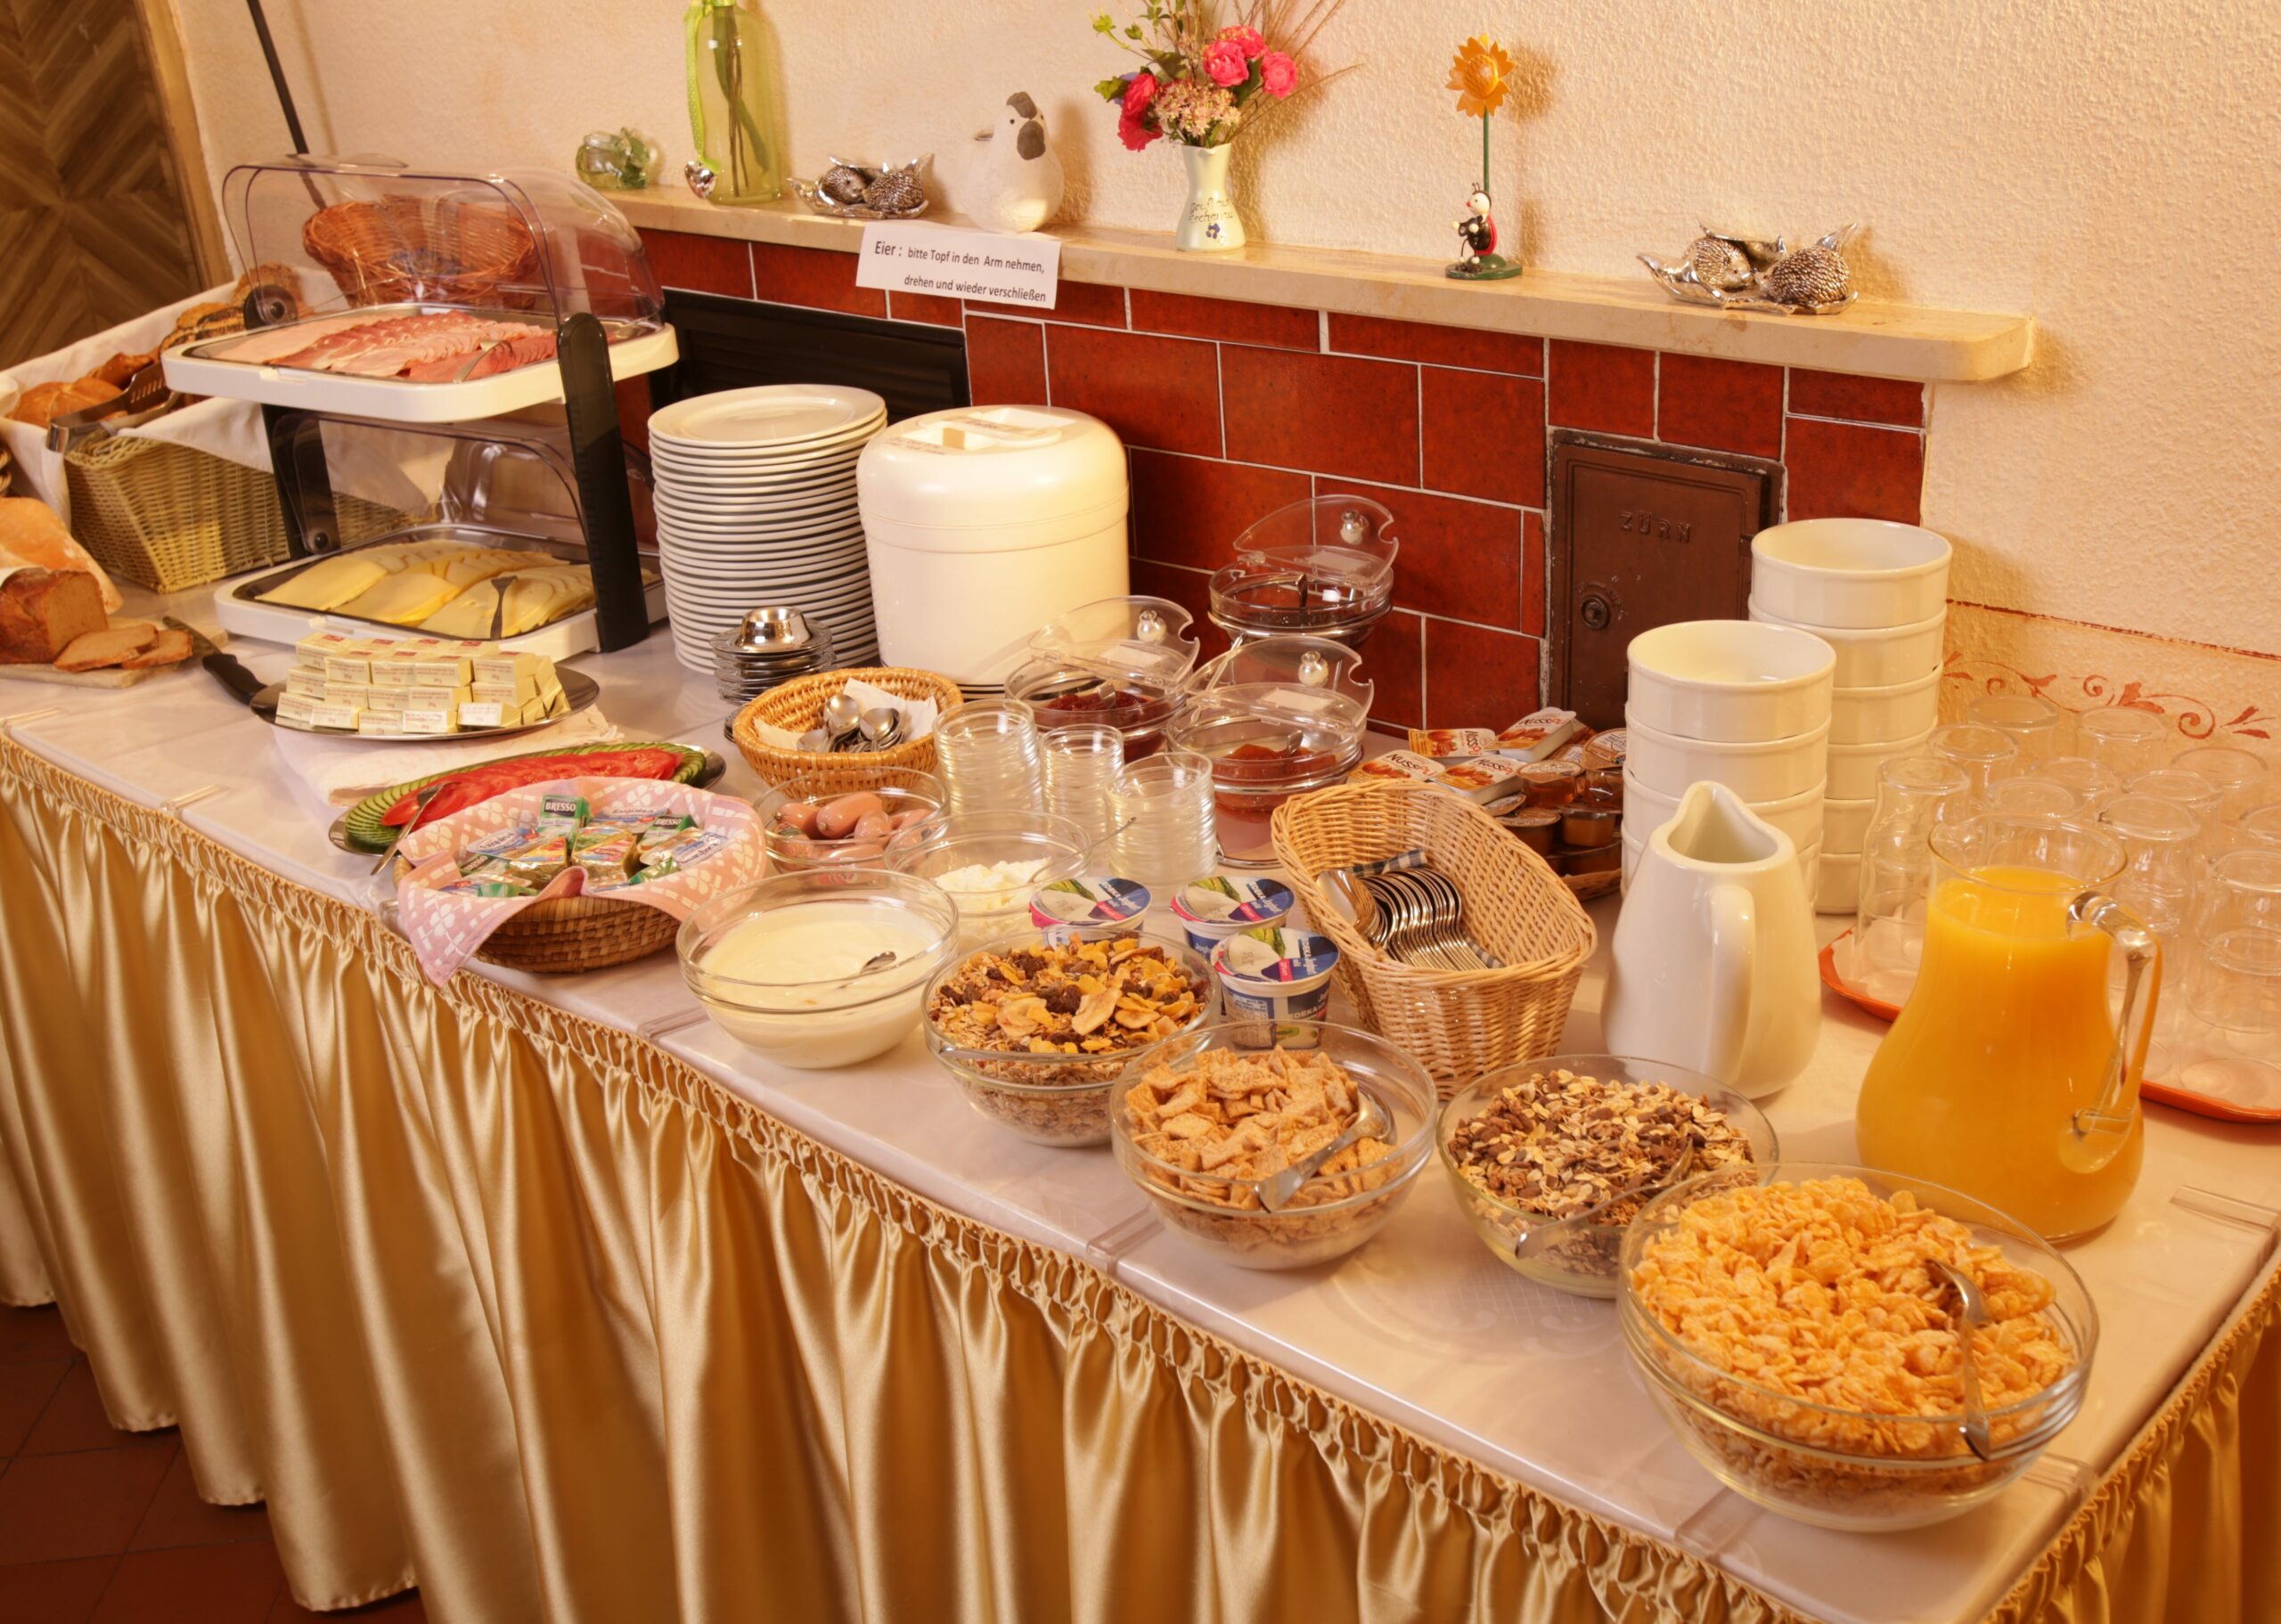 Ein voll gedeckter Buffet-Tisch mit frischem Orangensaft, einer Müsliauswahl, Joghurt, Aufstrichen und Belag und frischen Semmeln